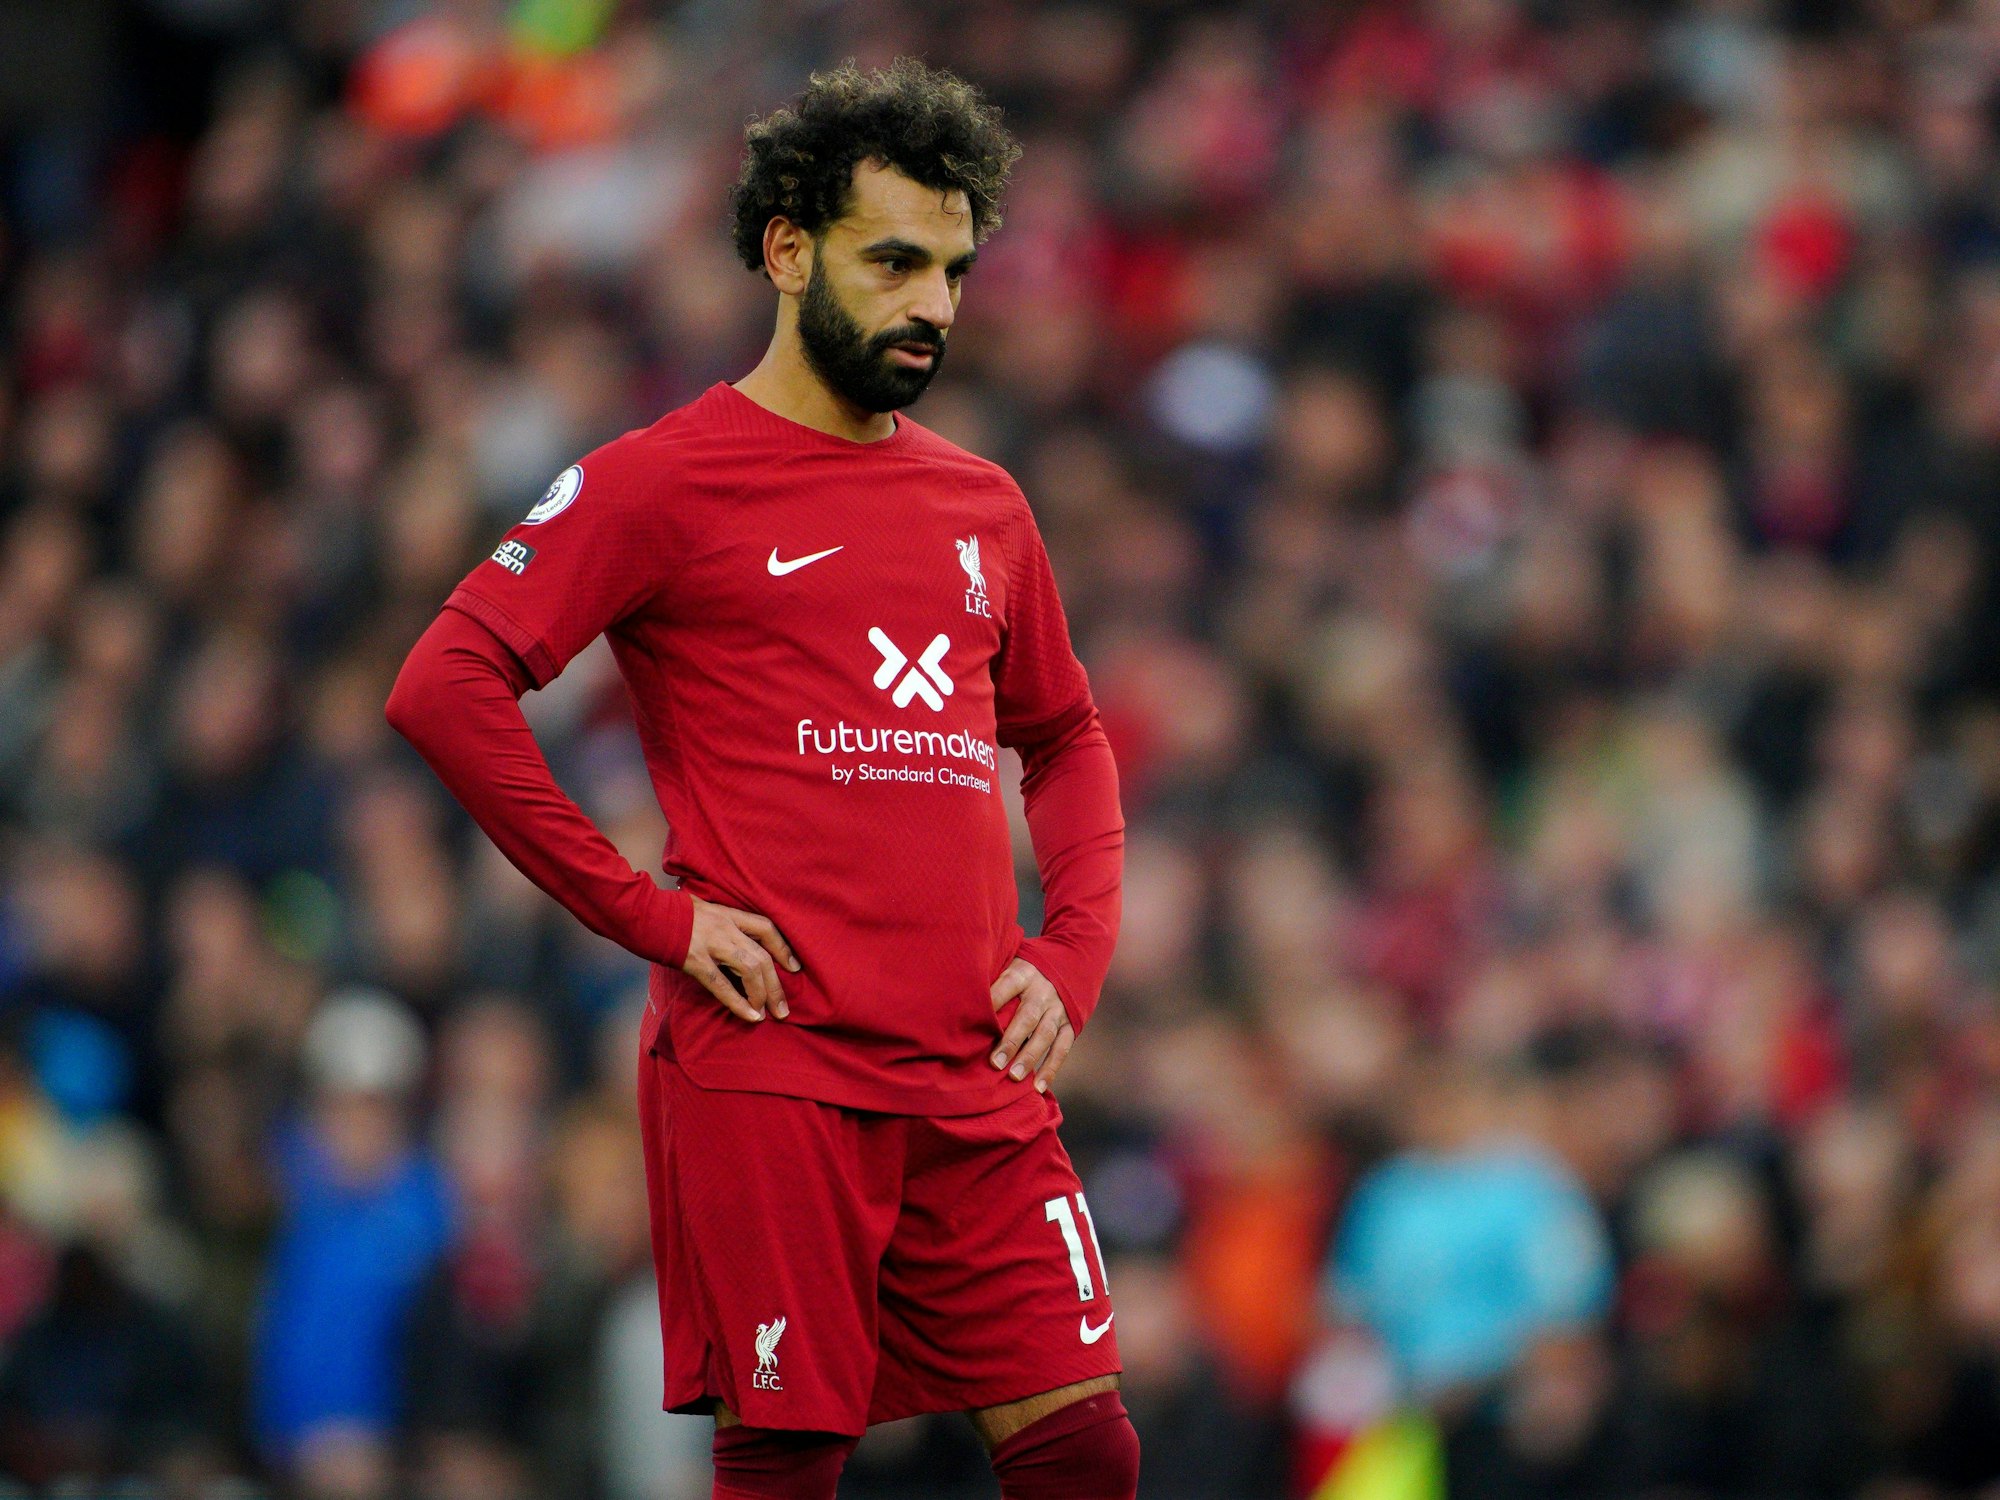 Mohamed Salah vomFC Liverpool stemmt während des Spiels die Hände in die Hüften.